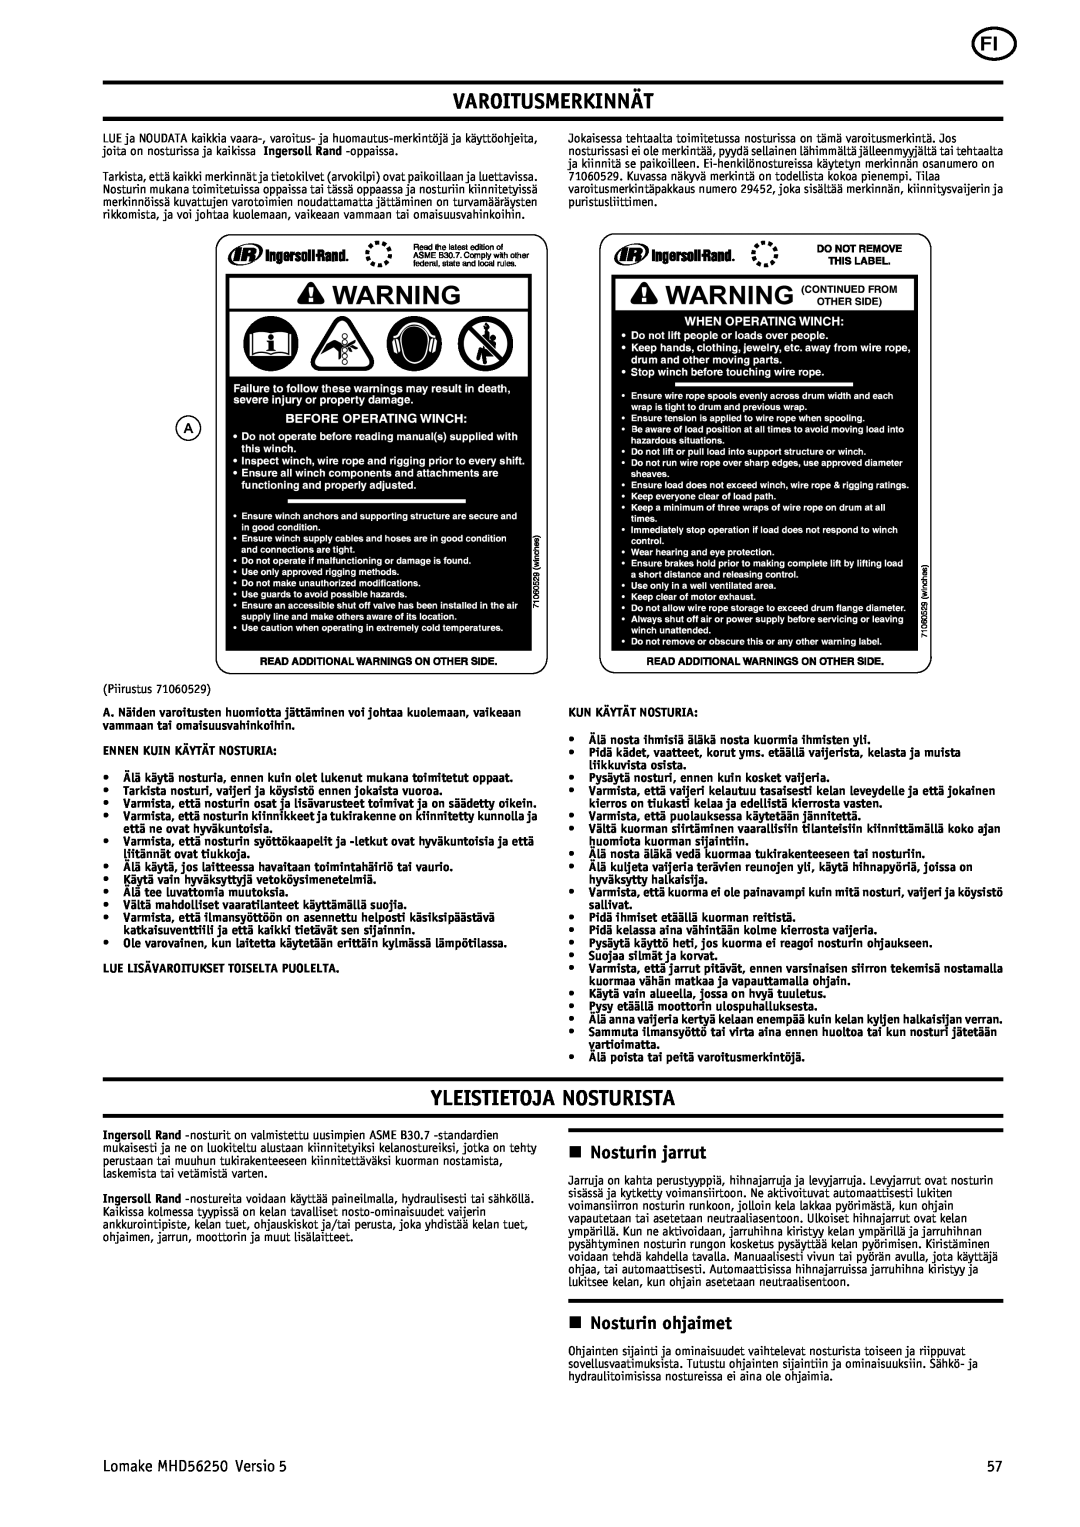 Ingersoll-Rand MHD56250 manual Varoitusmerkinnät, Yleistietoja Nosturista, n Nosturin jarrut, n Nosturin ohjaimet 